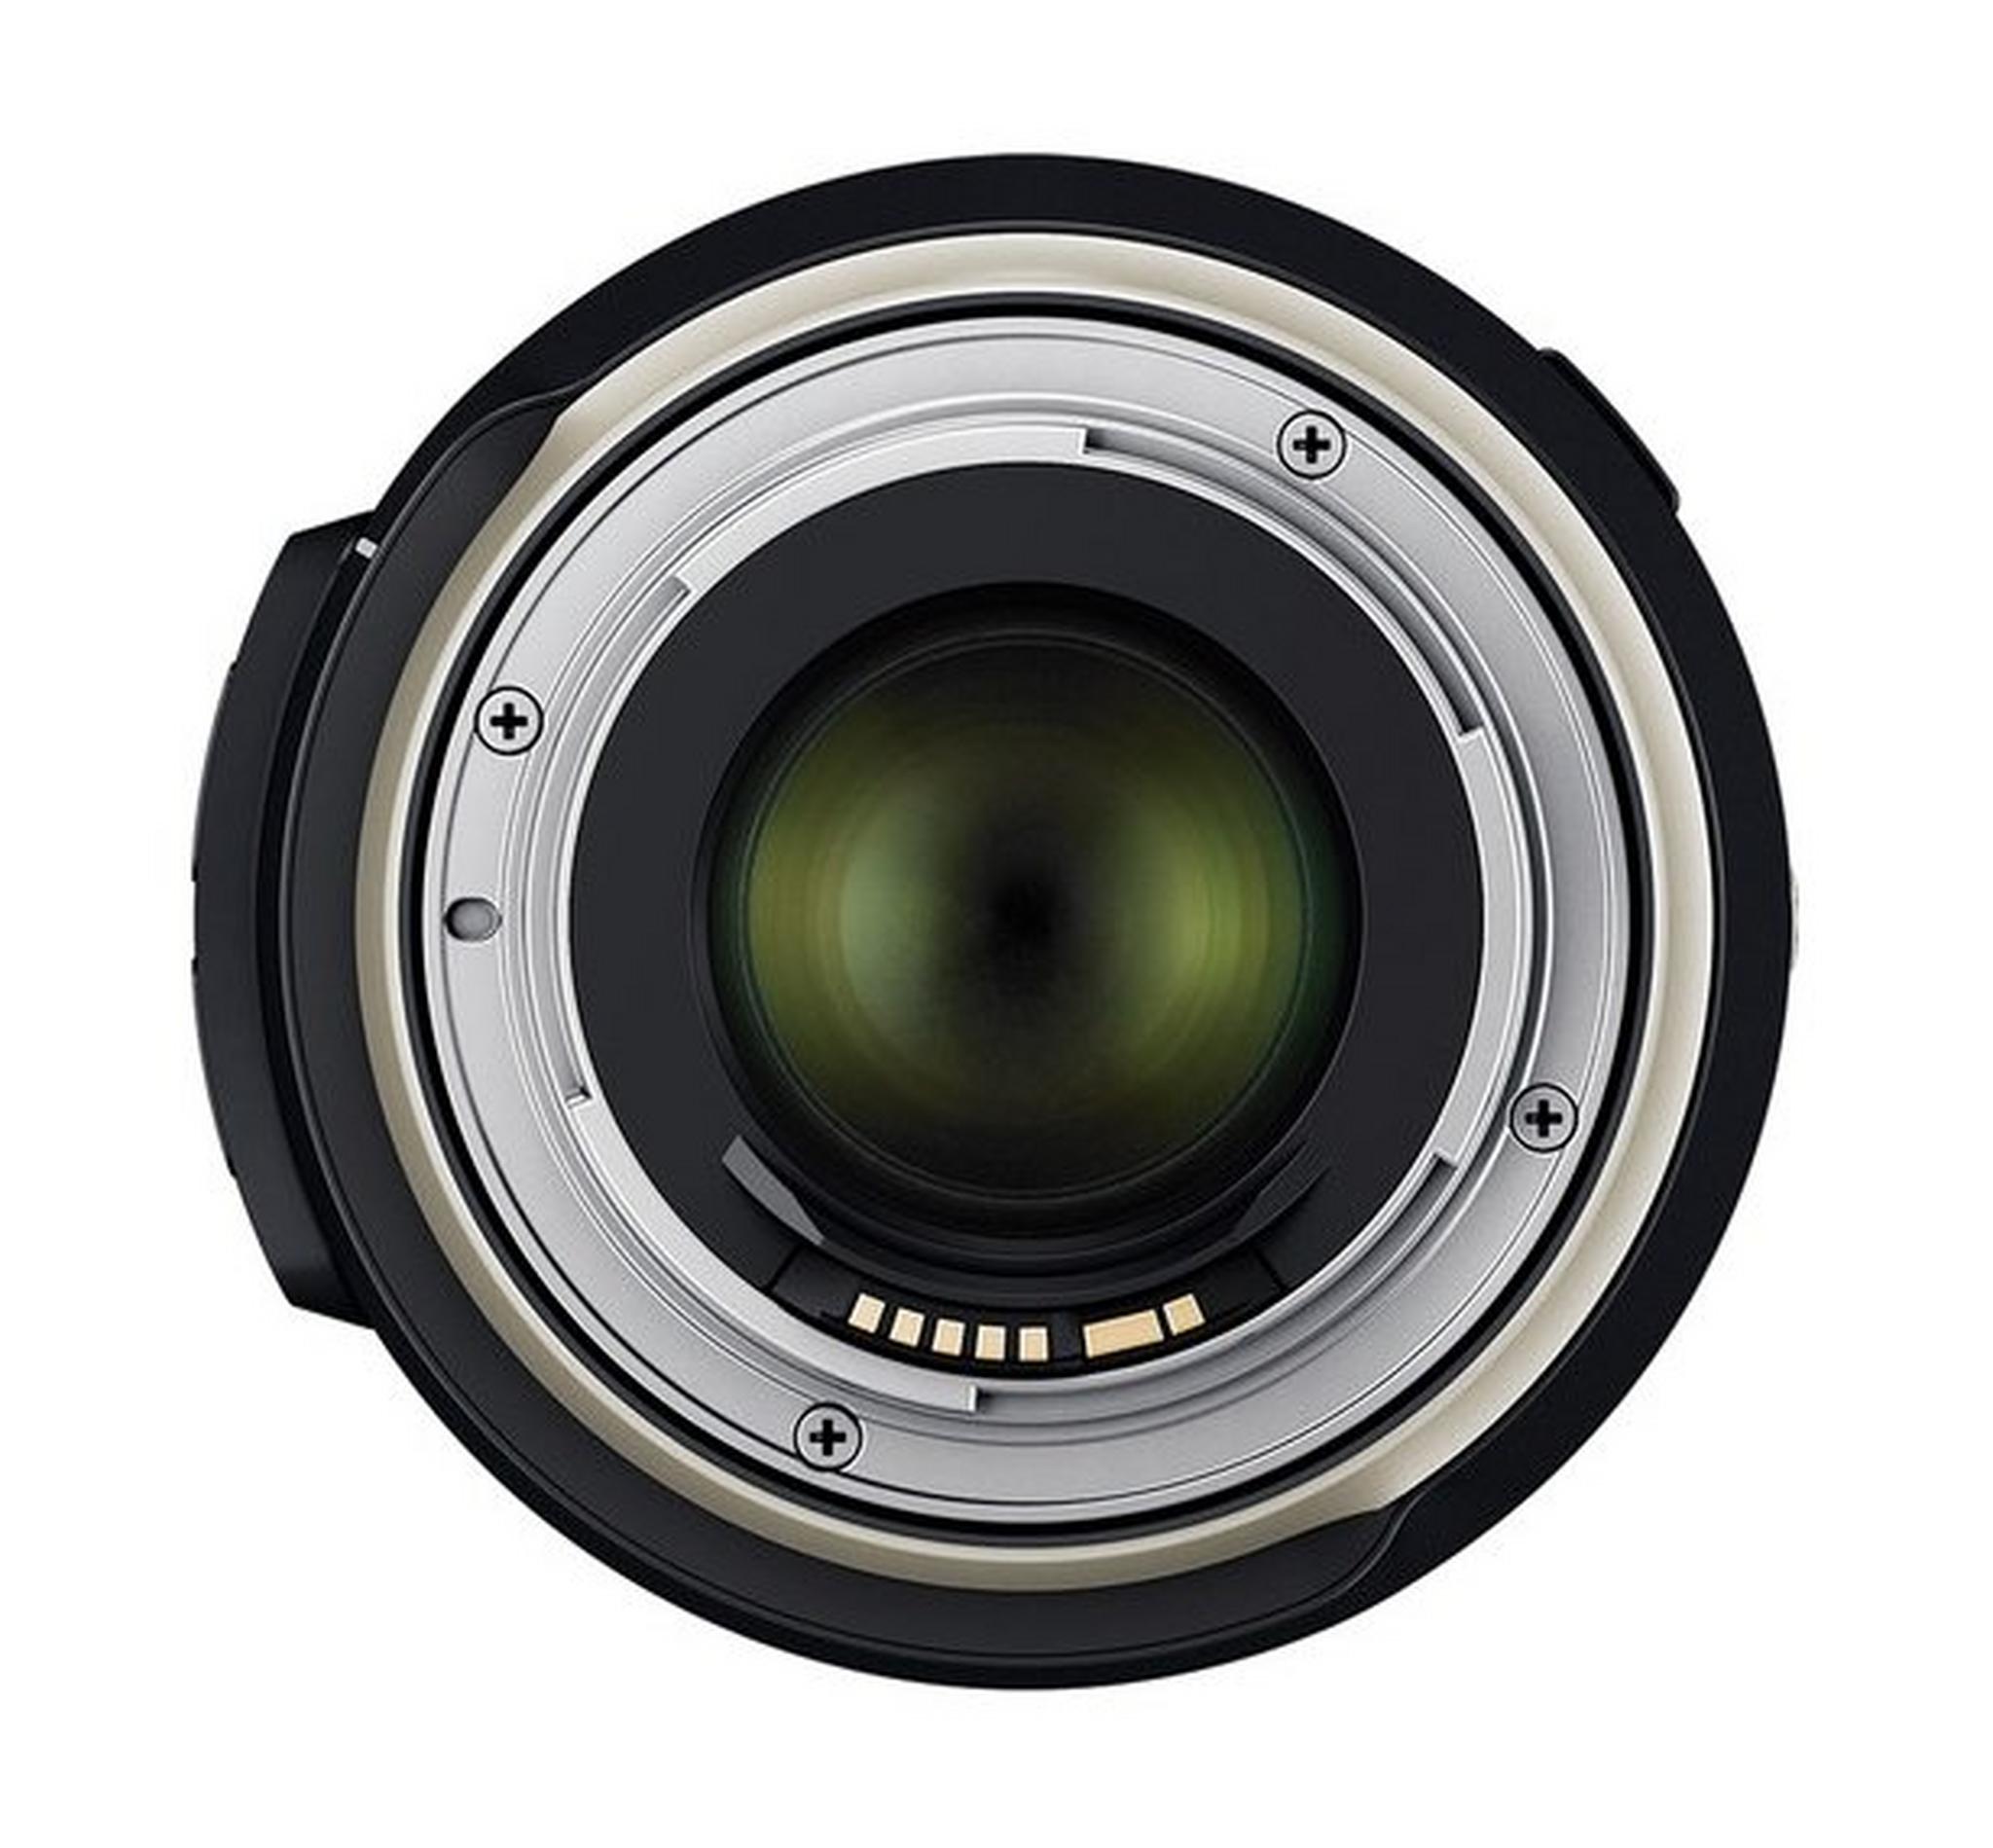 Tamron A032E 24-70mm F/2.8 Di VC USD G2 Lens for Canon - Black